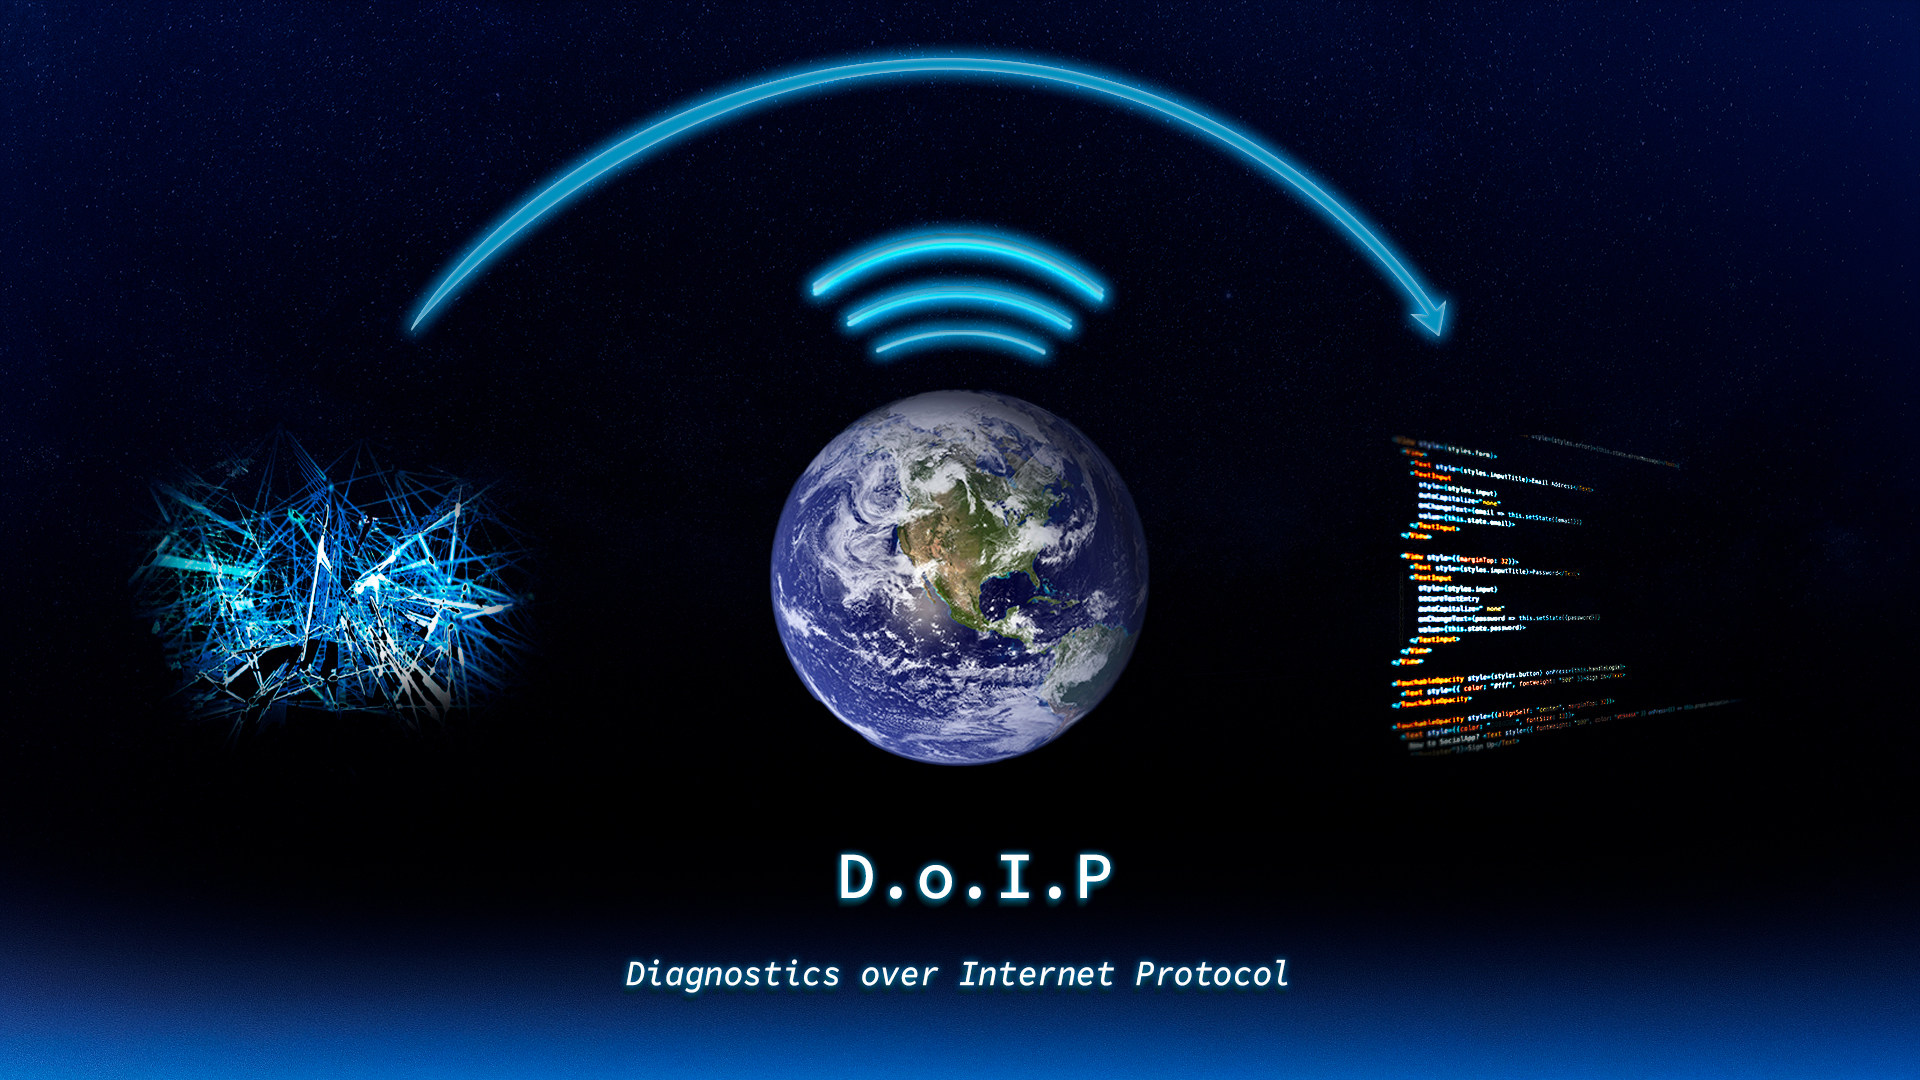 Illustration on how diagnostics over internet protocol works